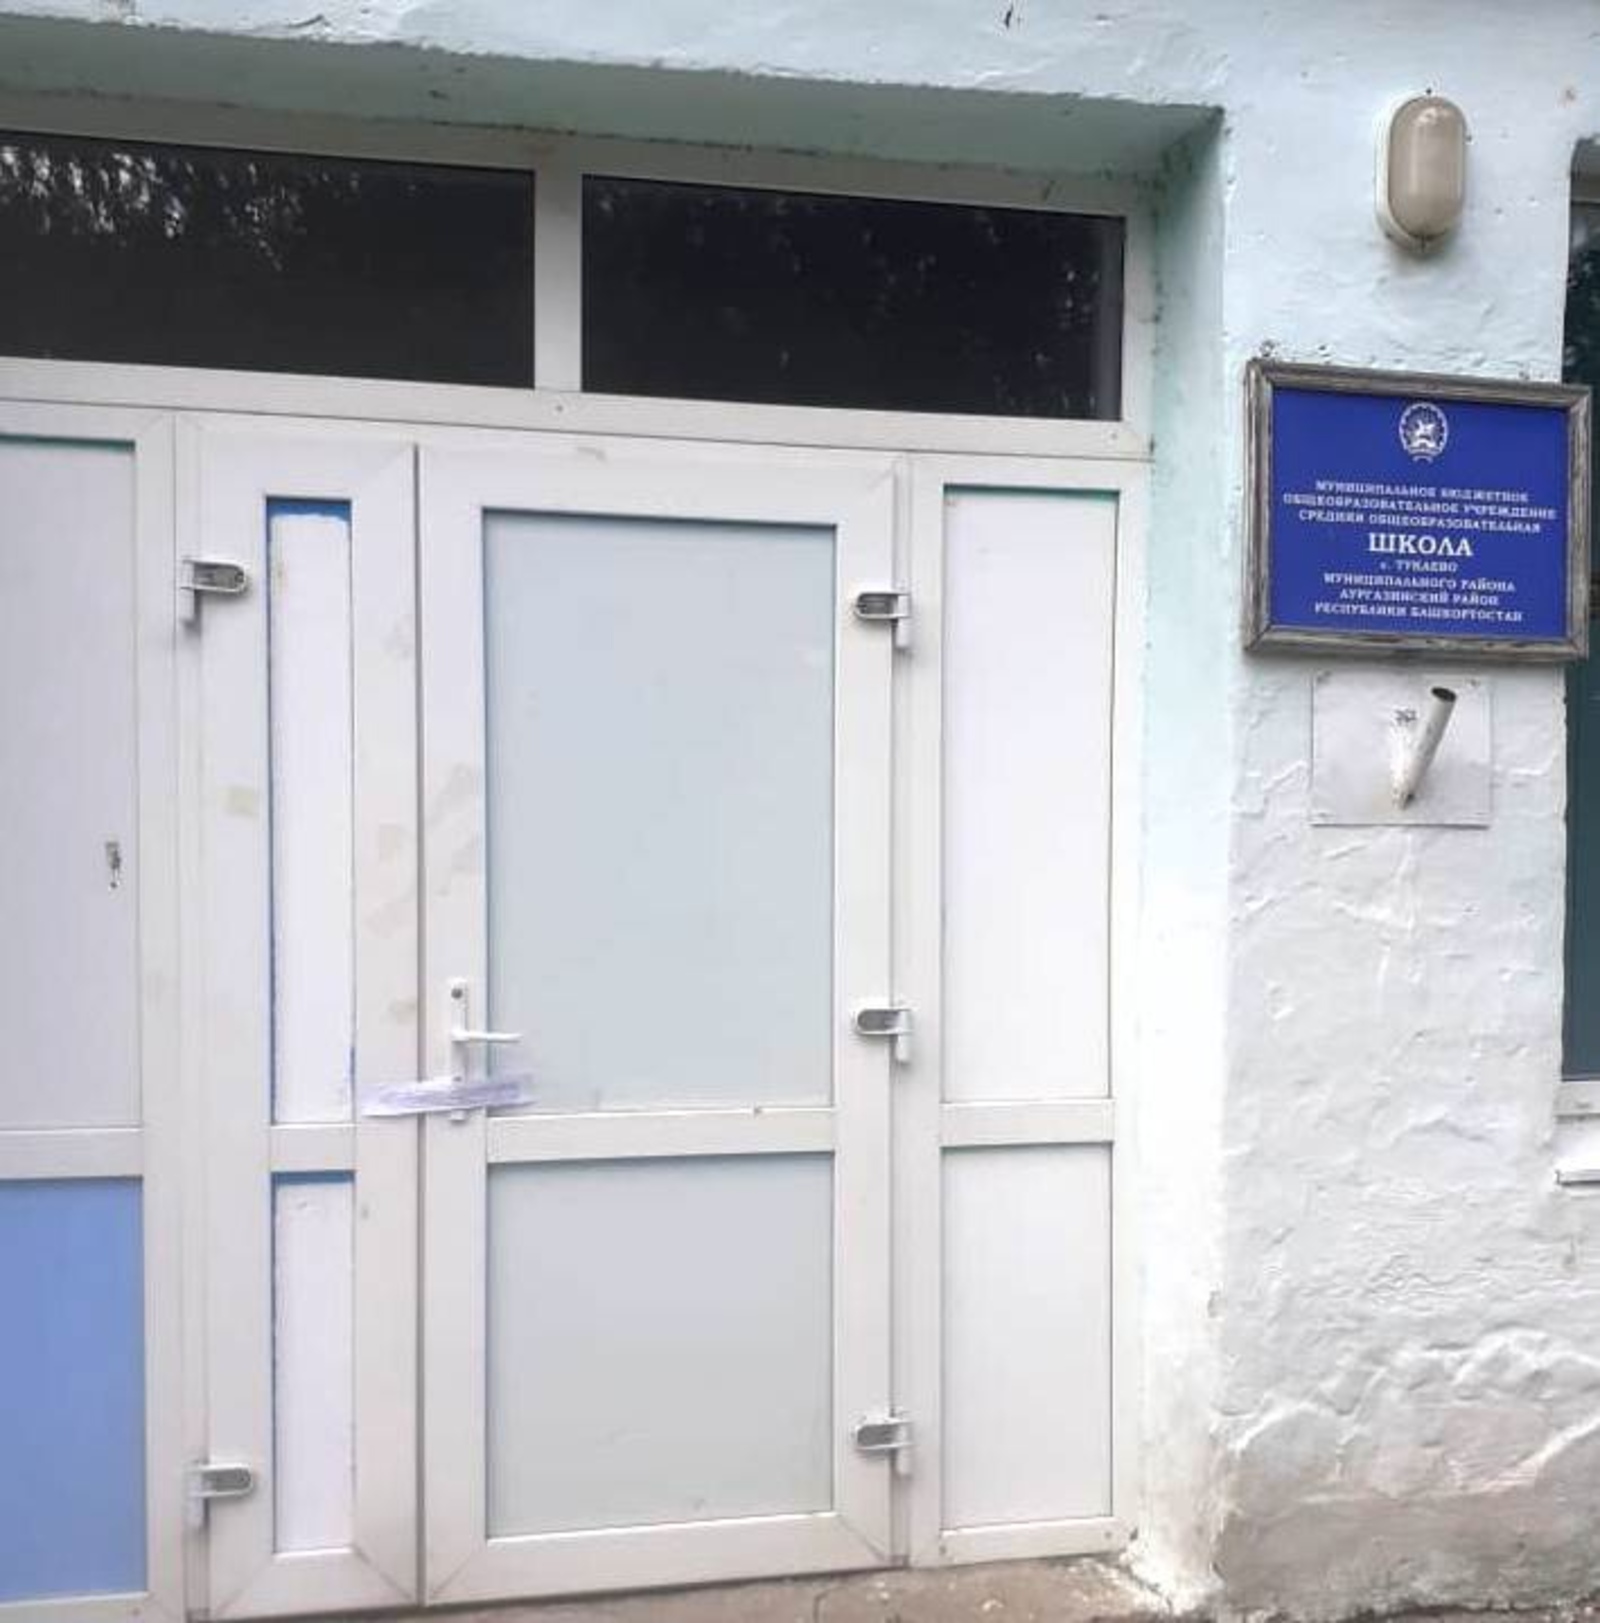 Судебные приставы Аургазинского района опечатали двери трех зданий на 30 дней